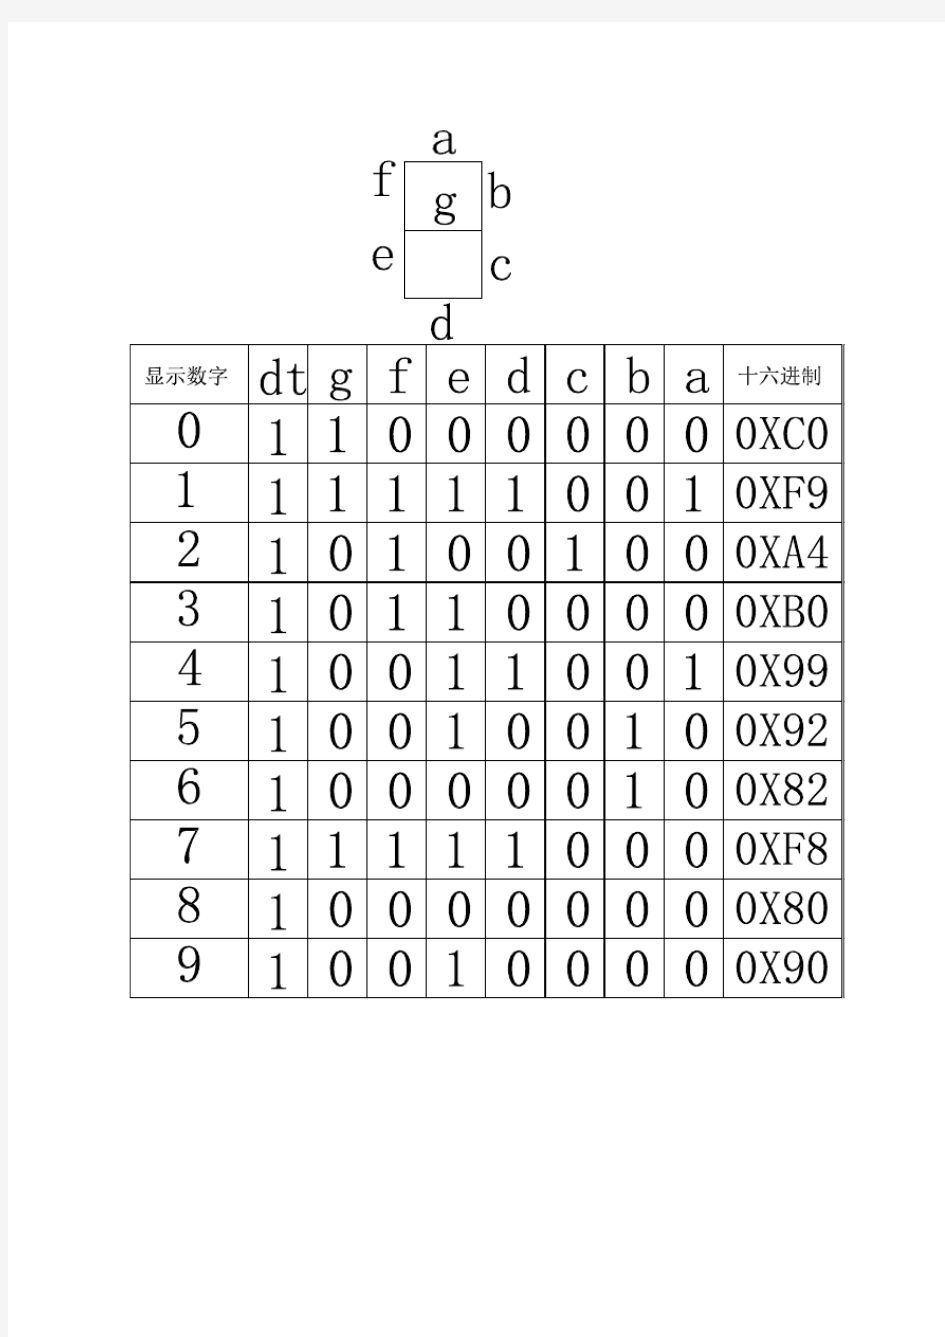 共阳极数码管二进制十六进制编码对照表